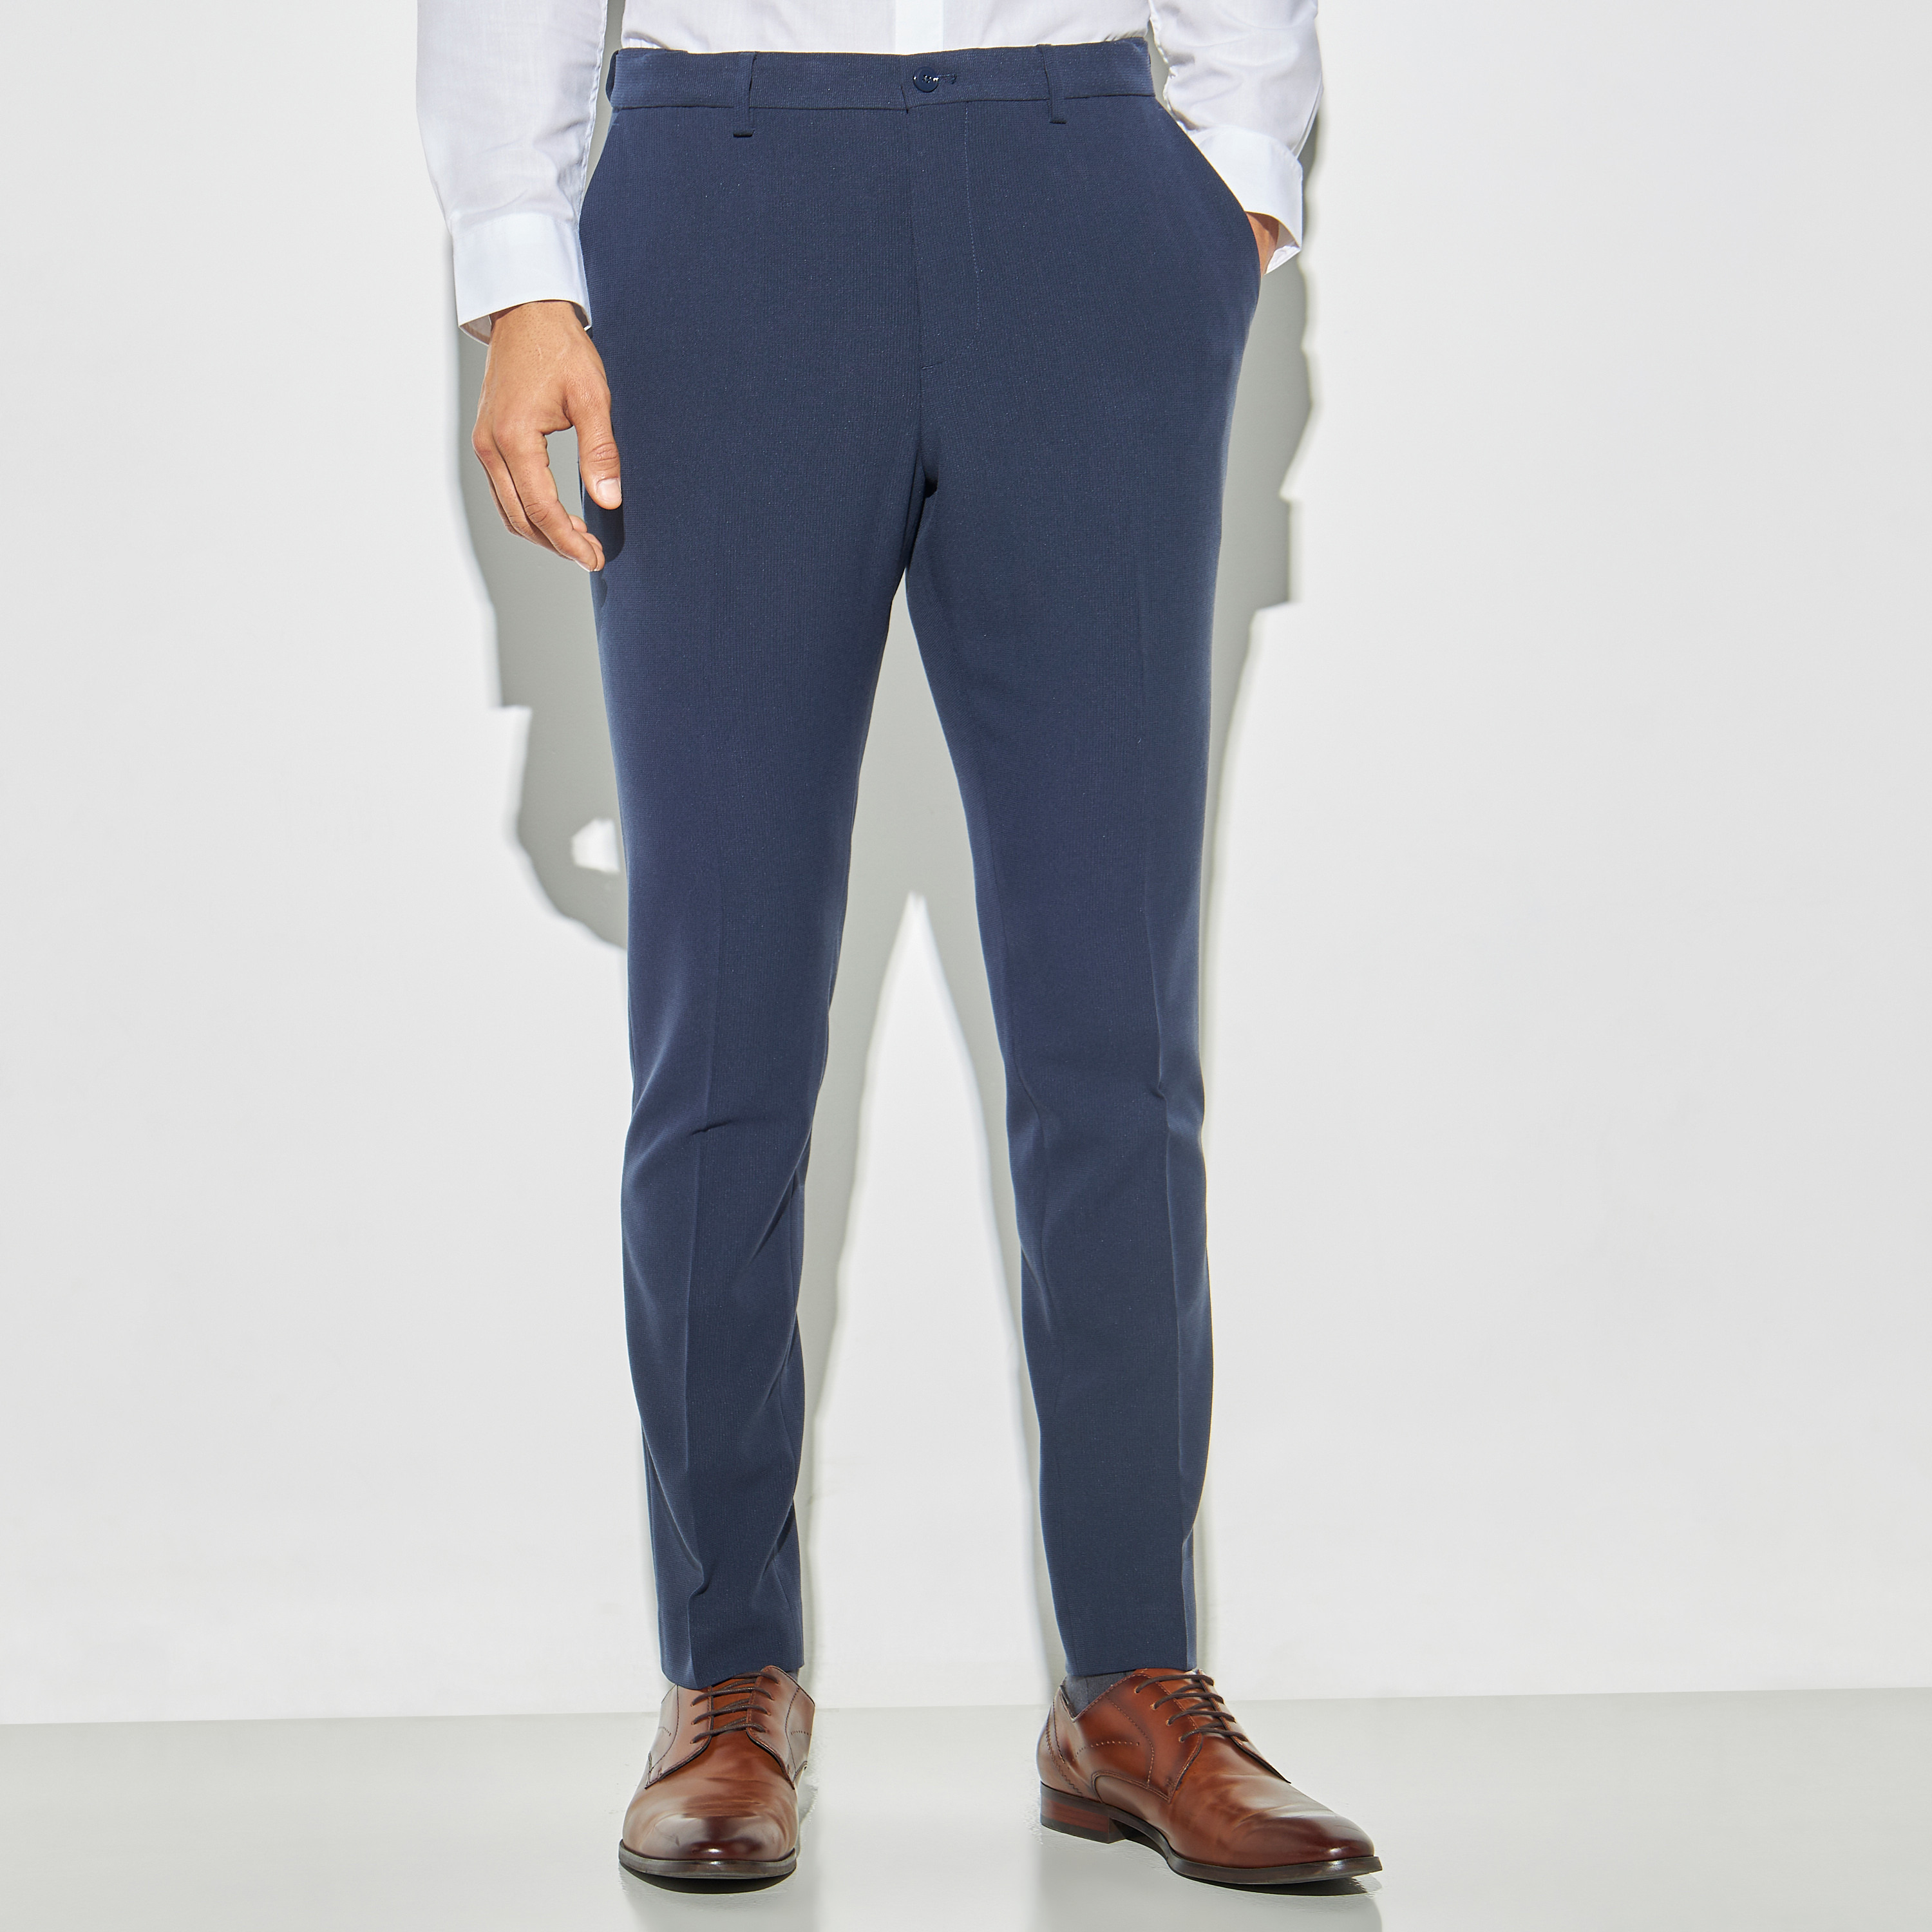 Ekansh Slim Fit Men White Trousers - Buy Ekansh Slim Fit Men White Trousers  Online at Best Prices in India | Flipkart.com